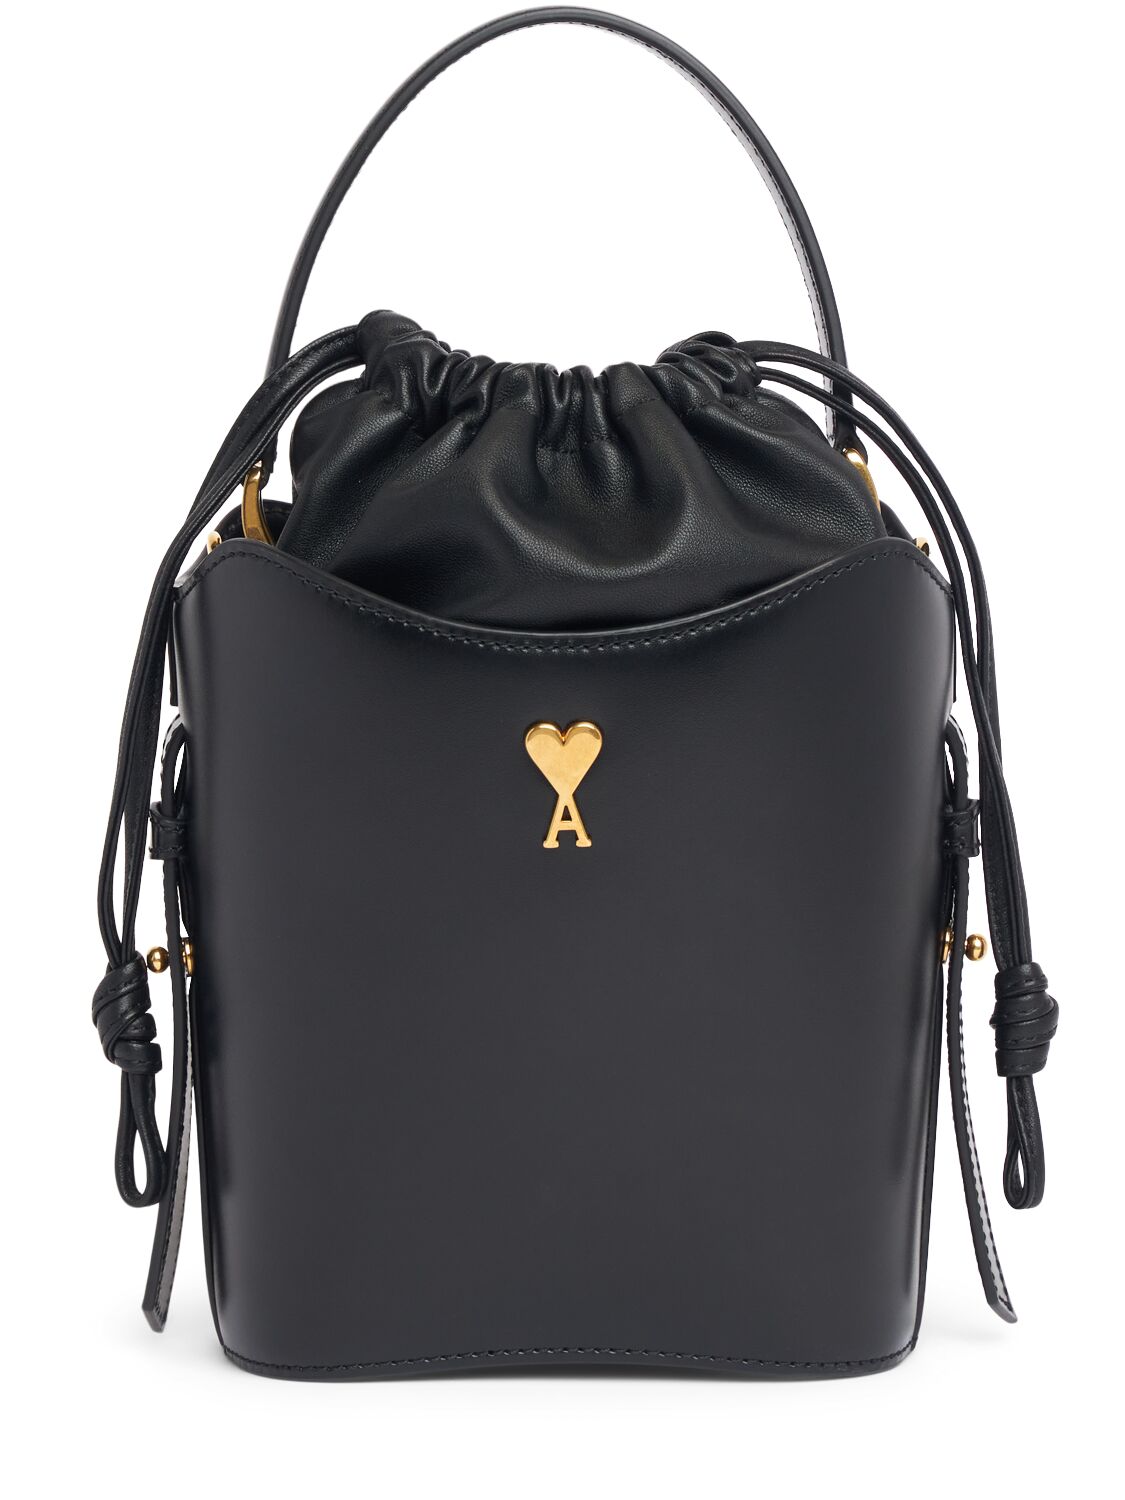 Ami Alexandre Mattiussi Paris Paris Smooth Leather Bucket Bag In Black